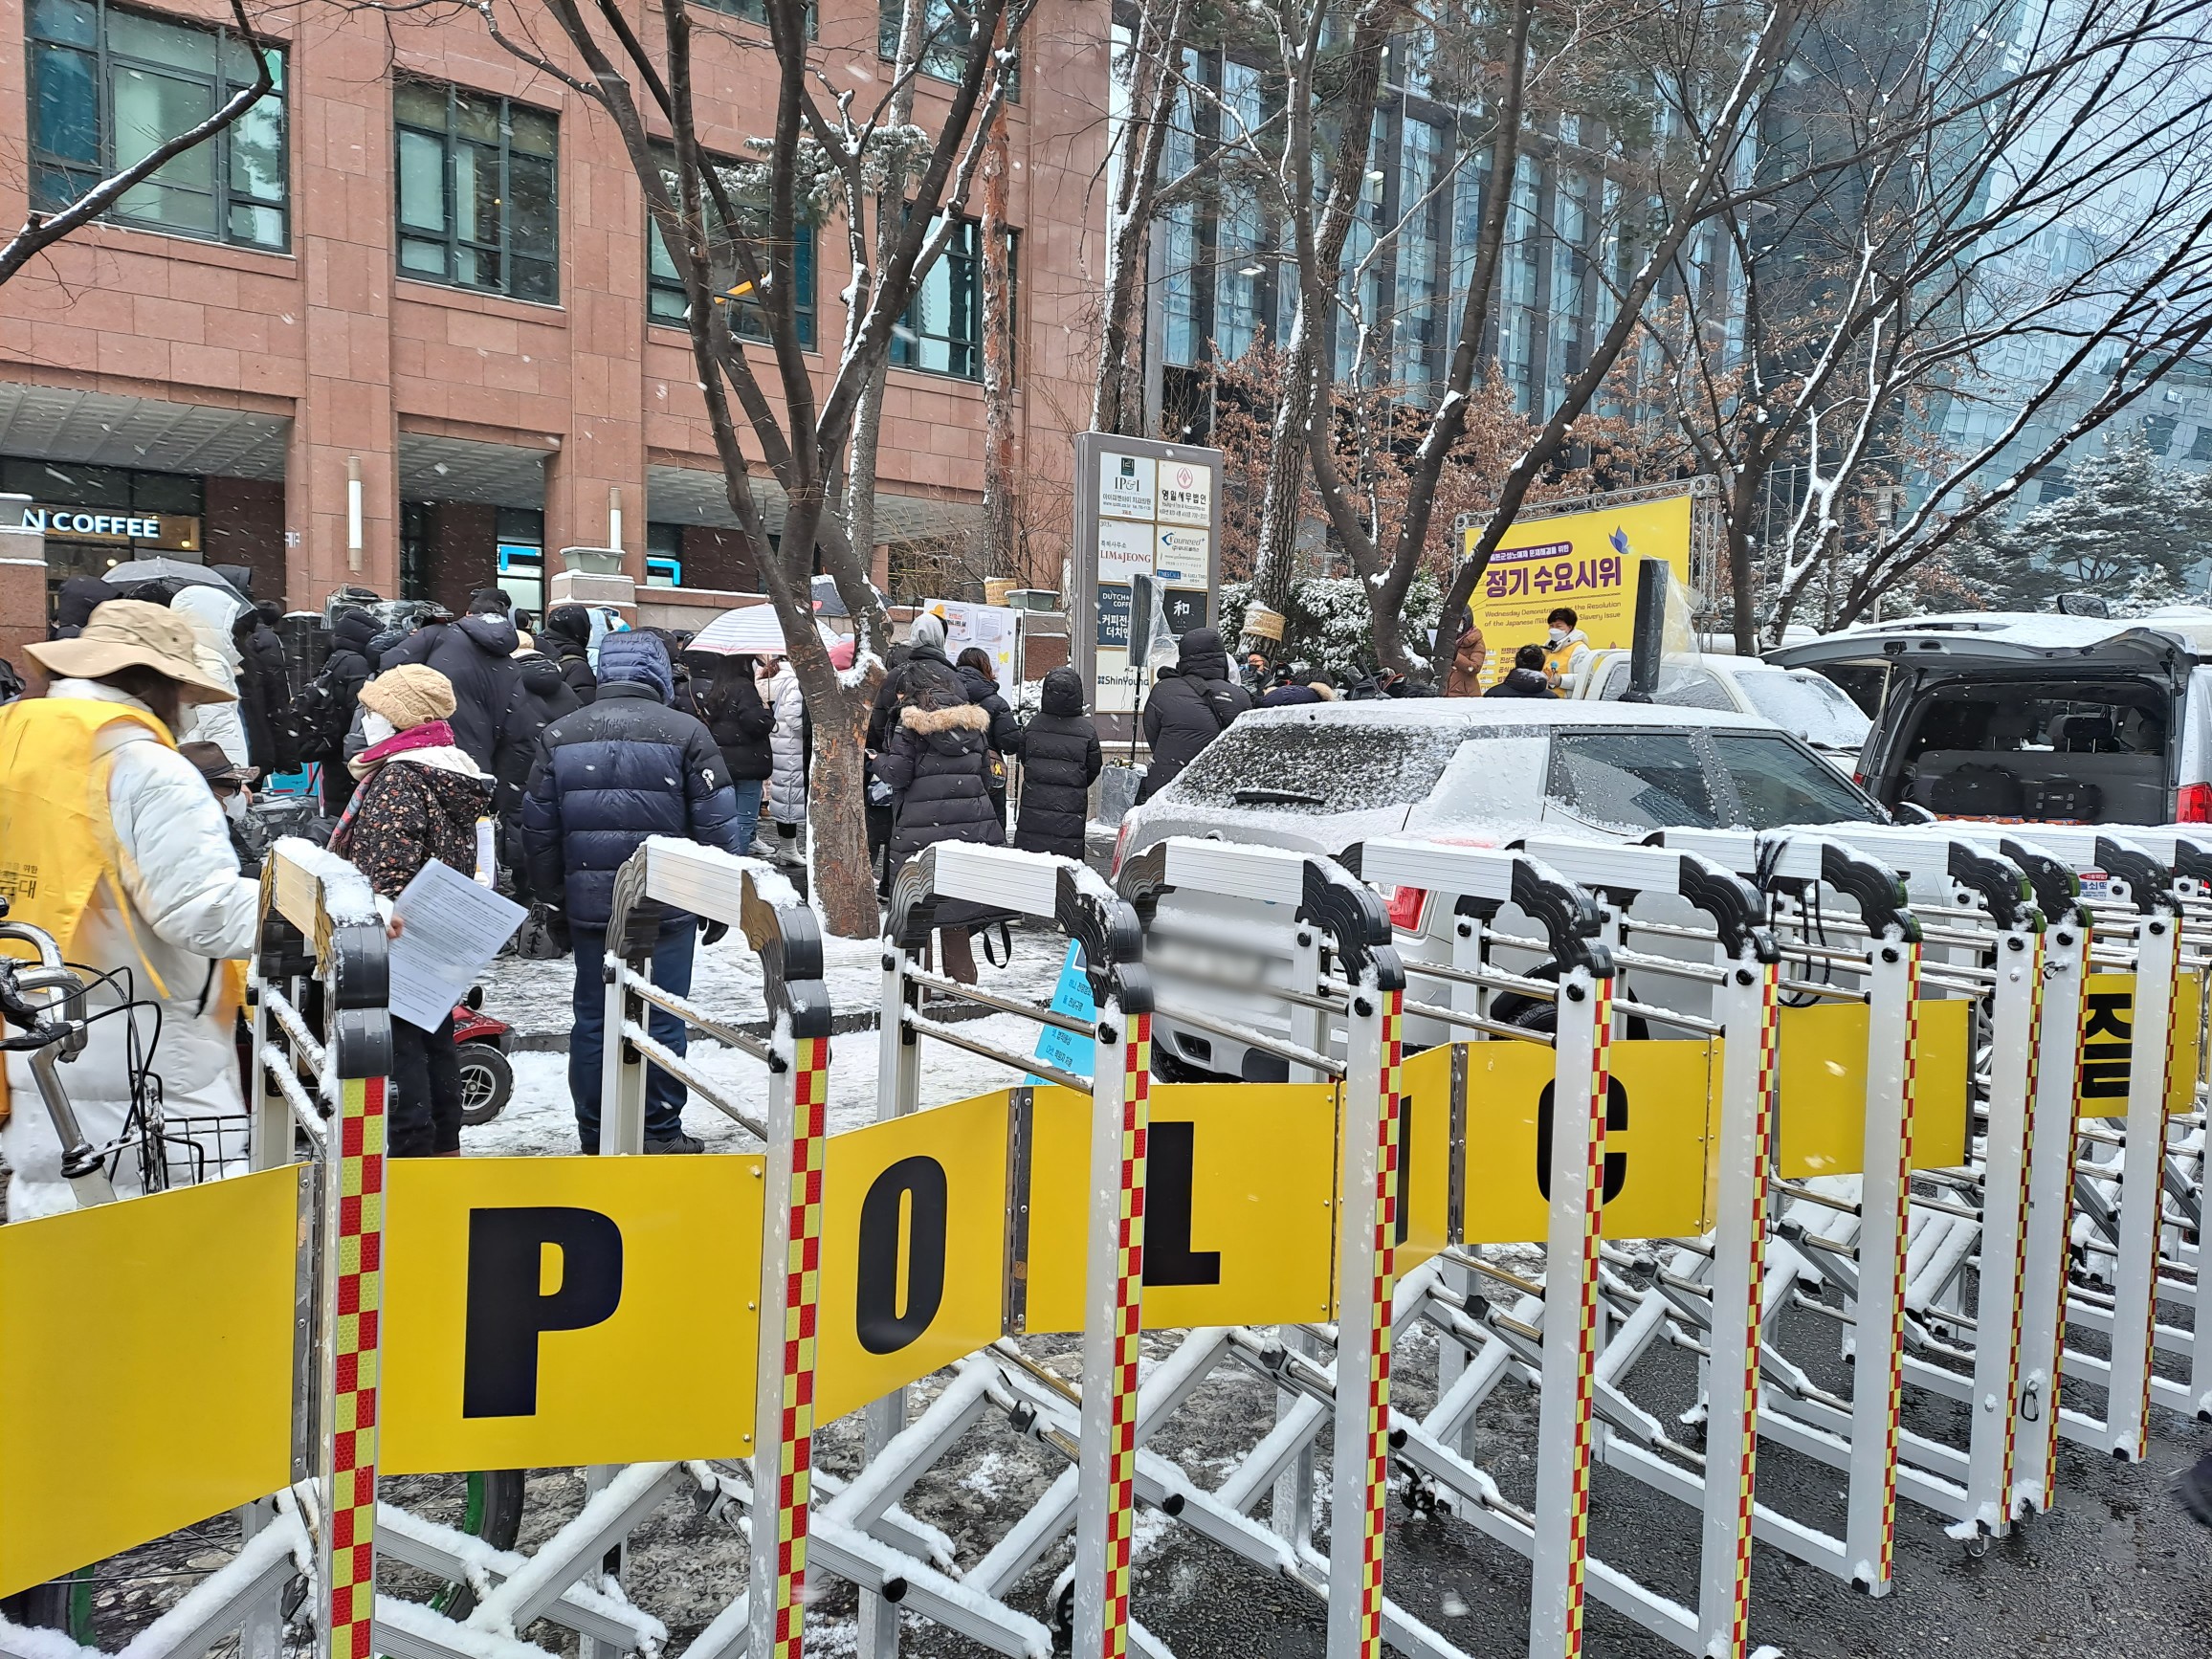 정의기억연대가 19일 서울 종로구 옛 일본대사관 근처에서 1527차 정기 수요시위를 열고 일본군 ‘위안부’ 피해 문제에 대한 해결을 촉구하고 있다.